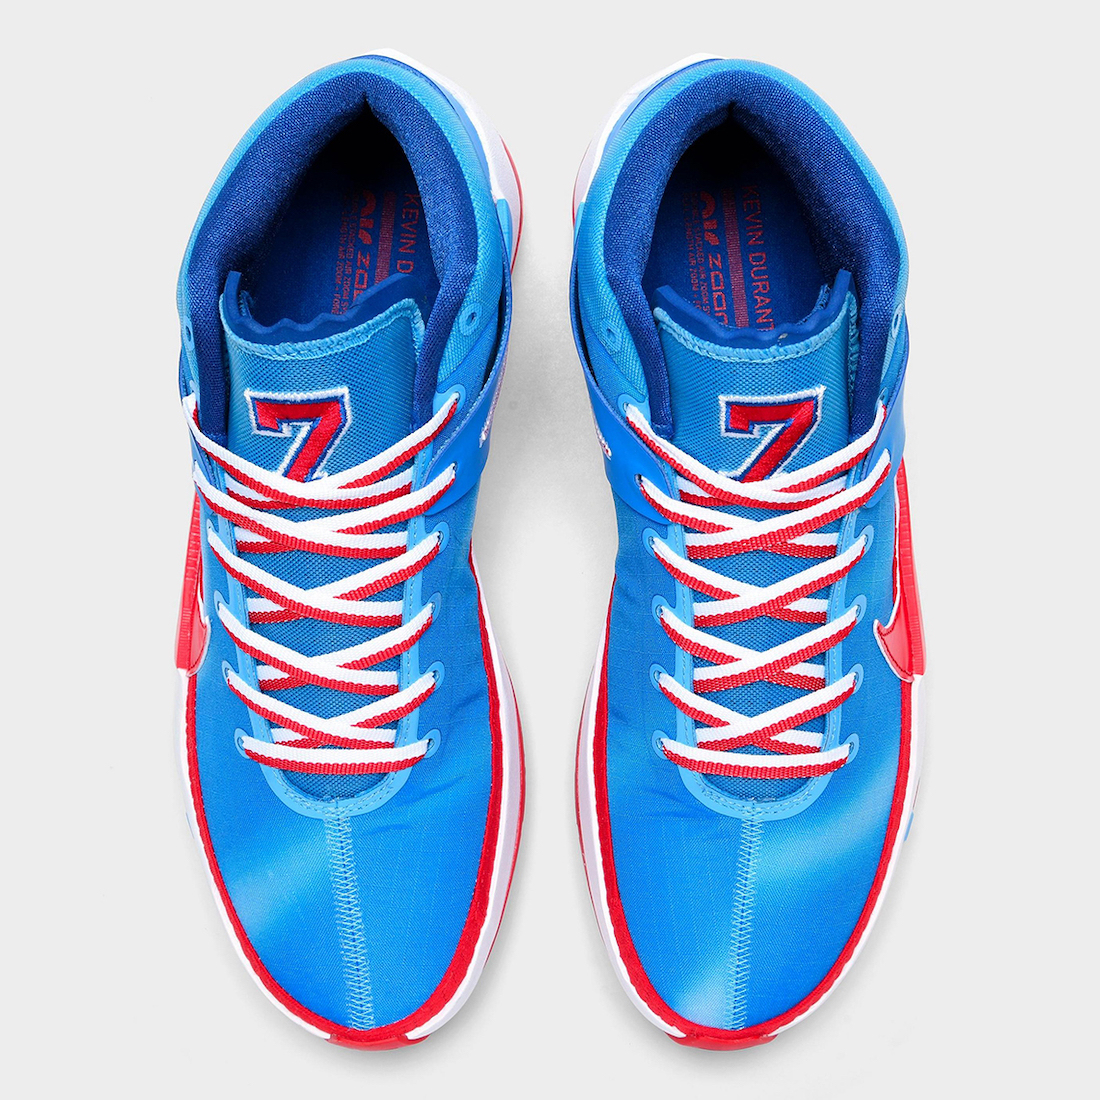 Nike KD 13 Tie Dye Classic University Blue Release Date